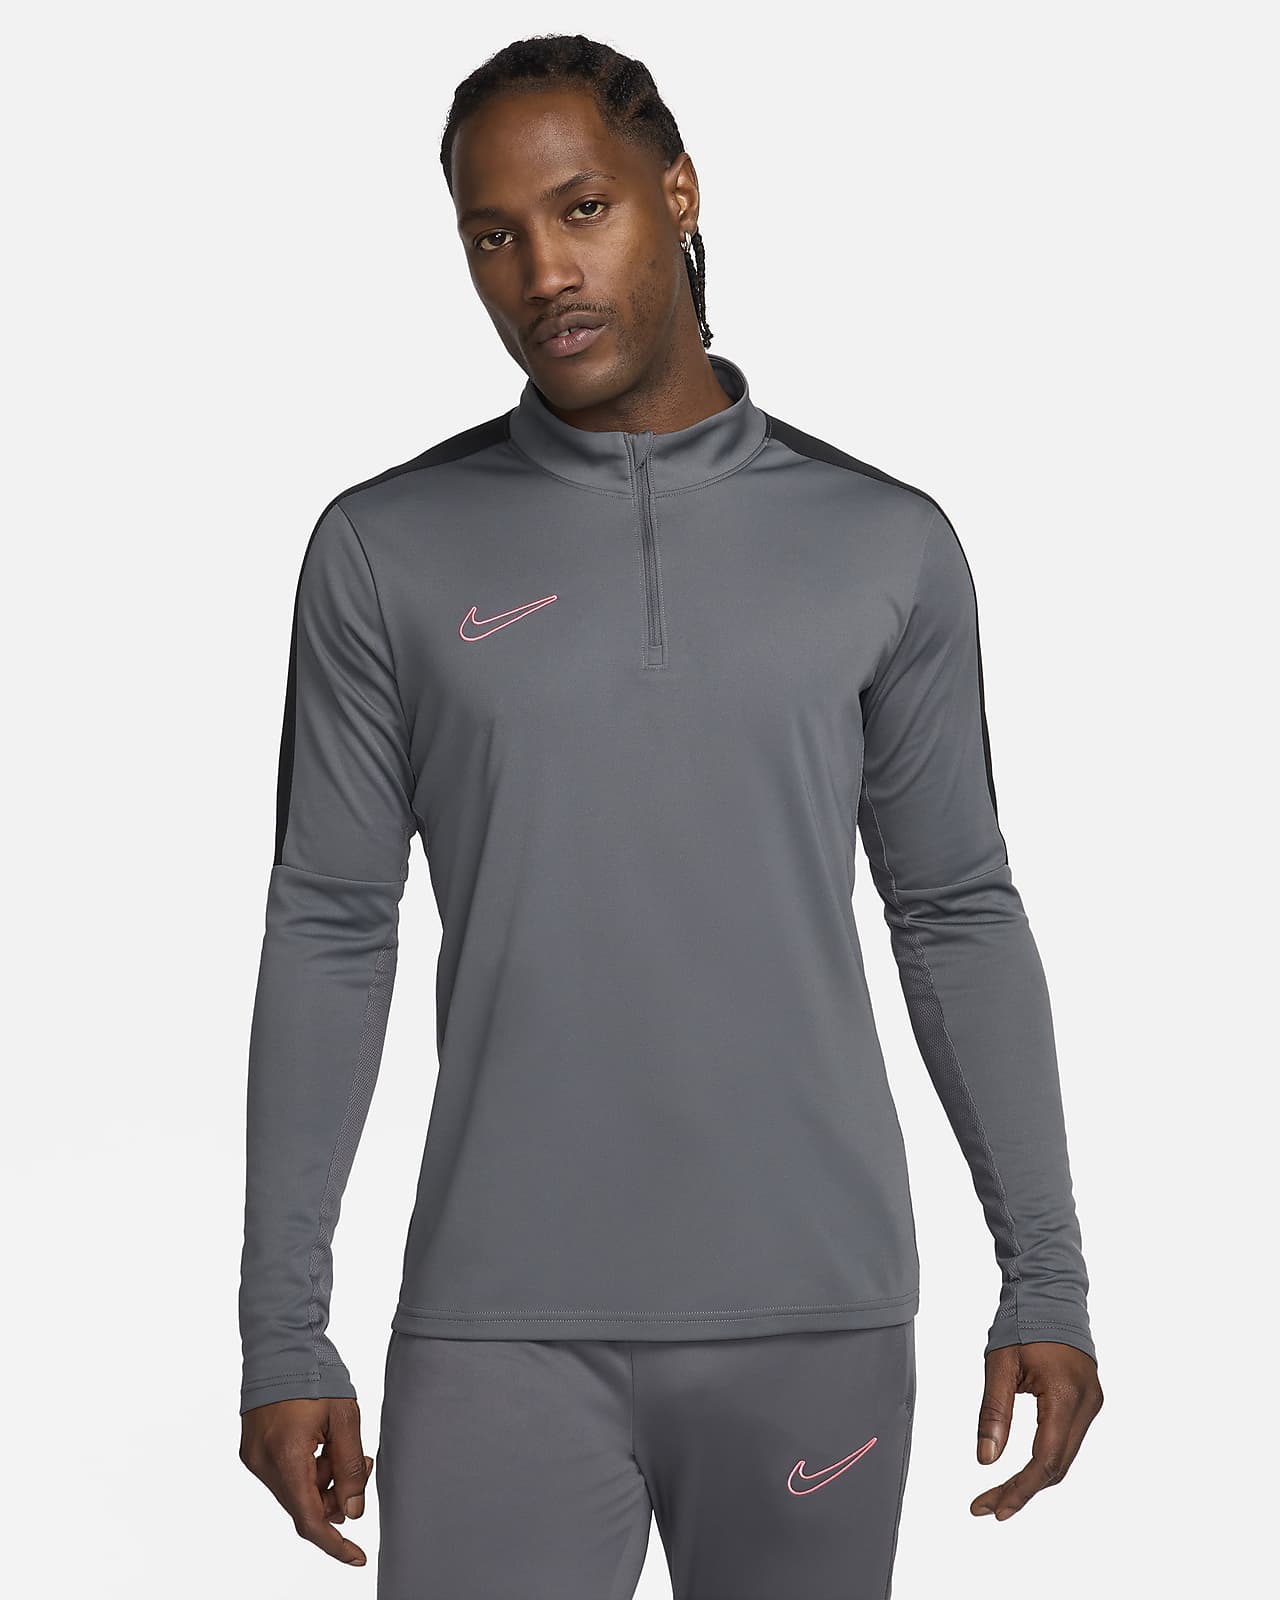 Ανδρική ποδοσφαιρική μπλούζα Dri-FIT με φερμουάρ στο 1/2 του μήκους Nike Academy